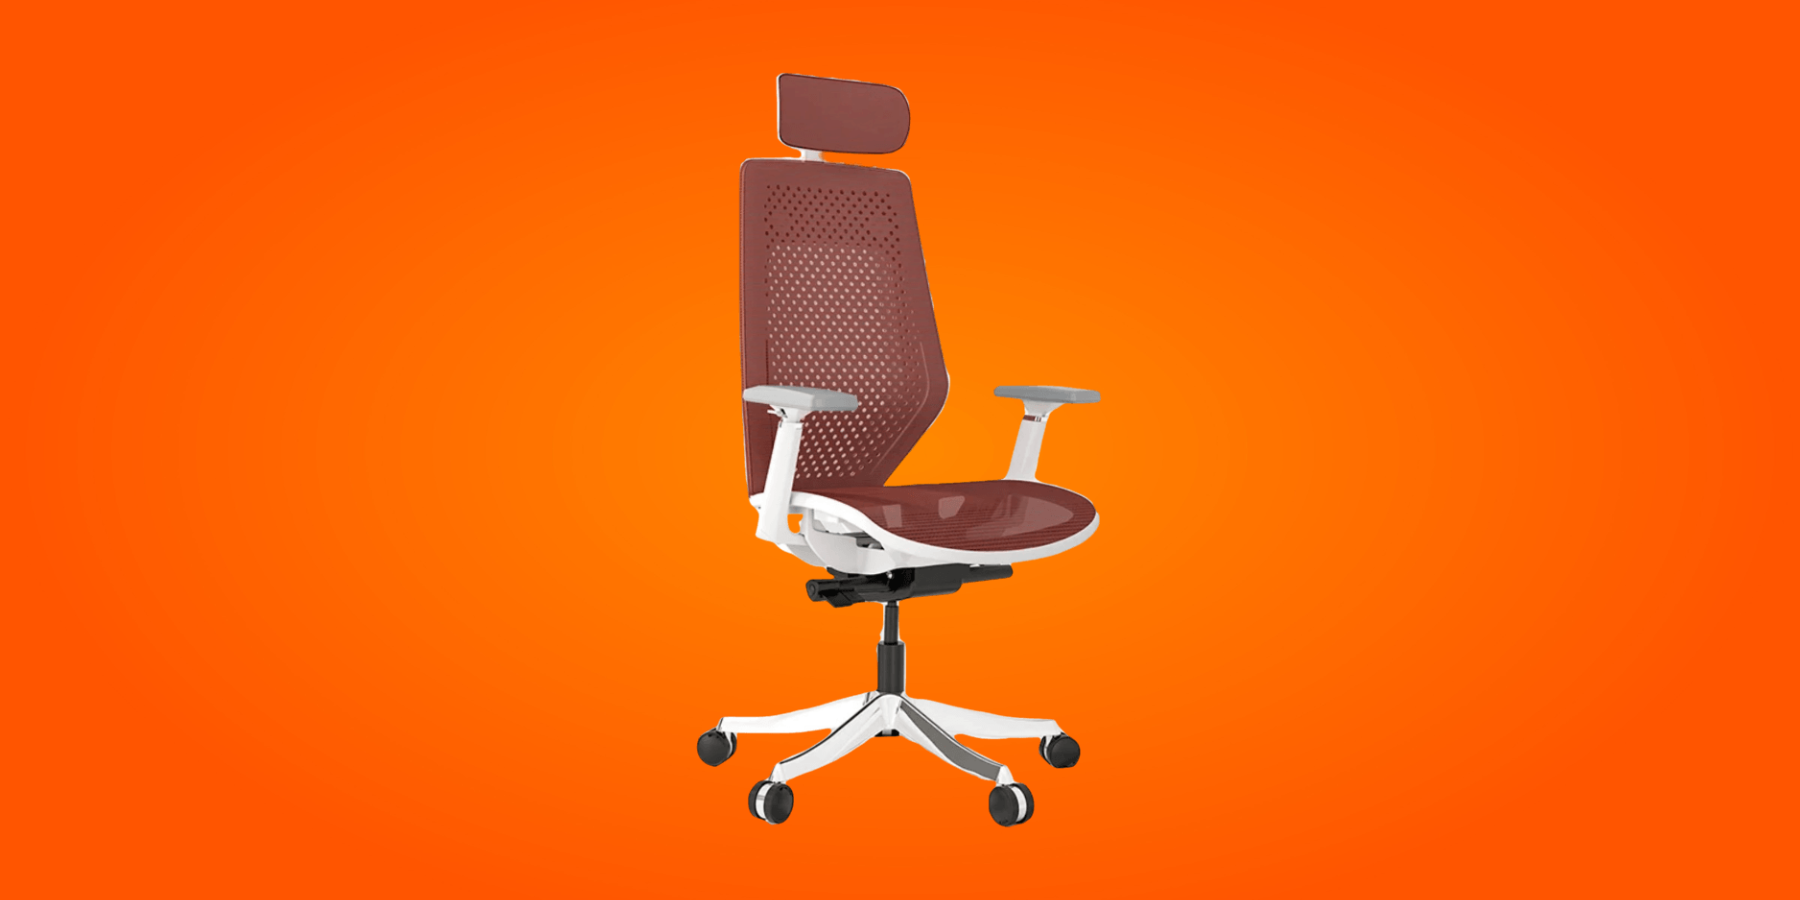 FlexiSpot Ergonomic Chair Review